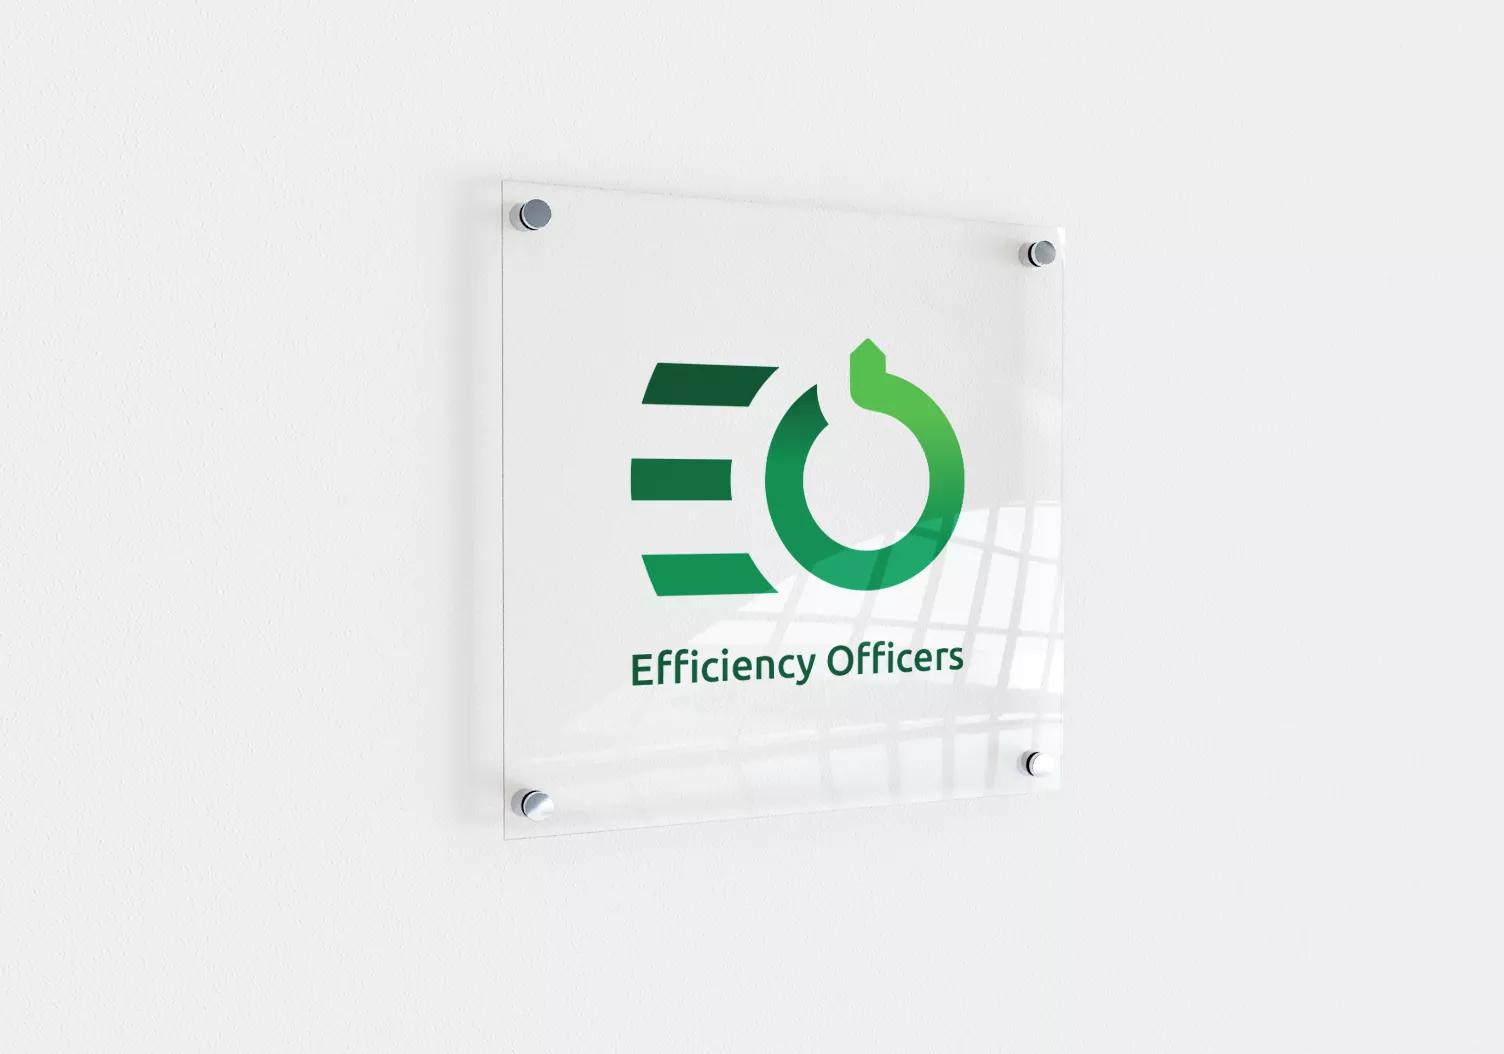 Efficiency Officers identyfikacja wizualna - projekt logo, wizualizacja na tabliczce